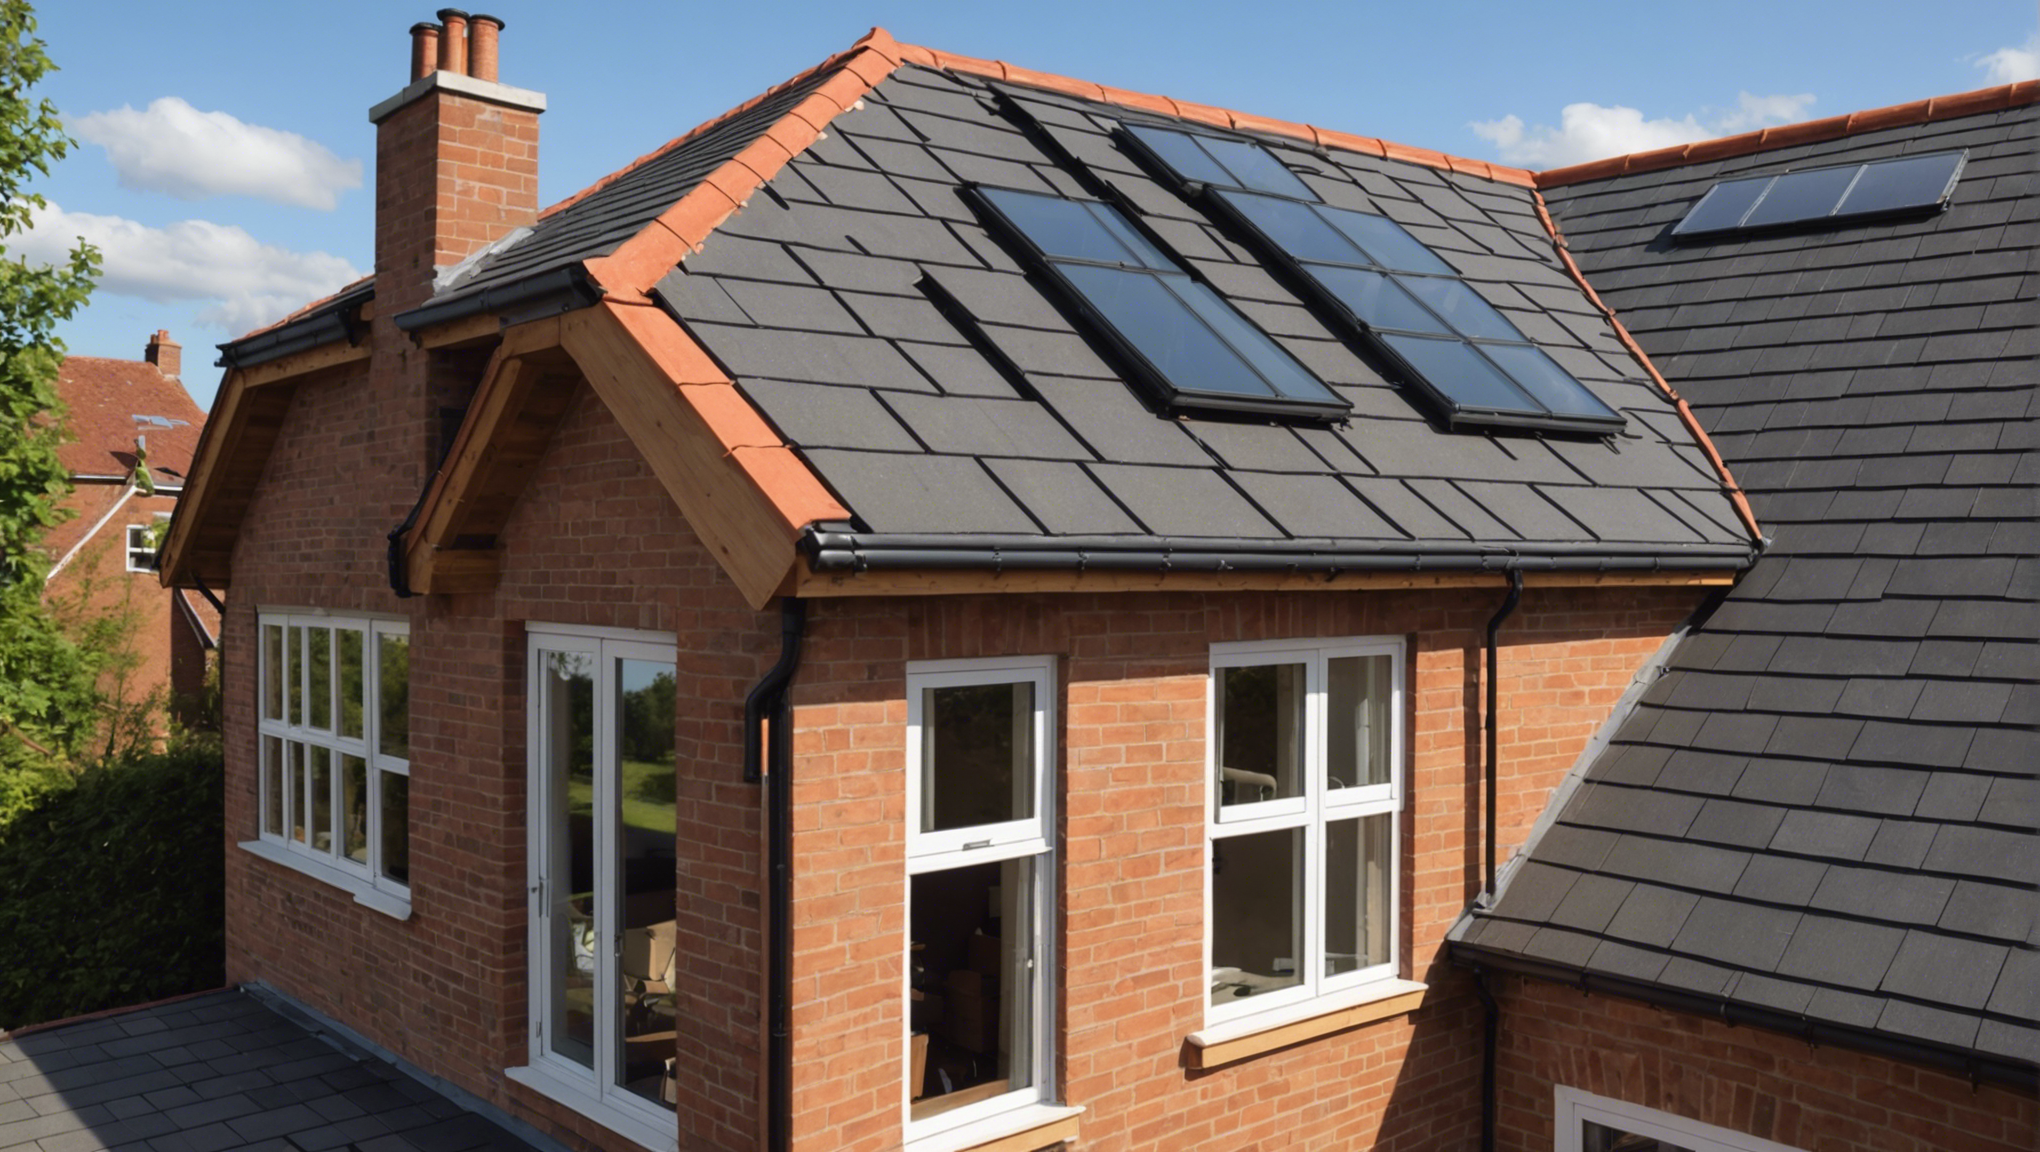 découvrez les étapes pour isoler votre toiture par l'extérieur et améliorer l'efficacité énergétique de votre maison. conseils et techniques pour une isolation performante et durable.